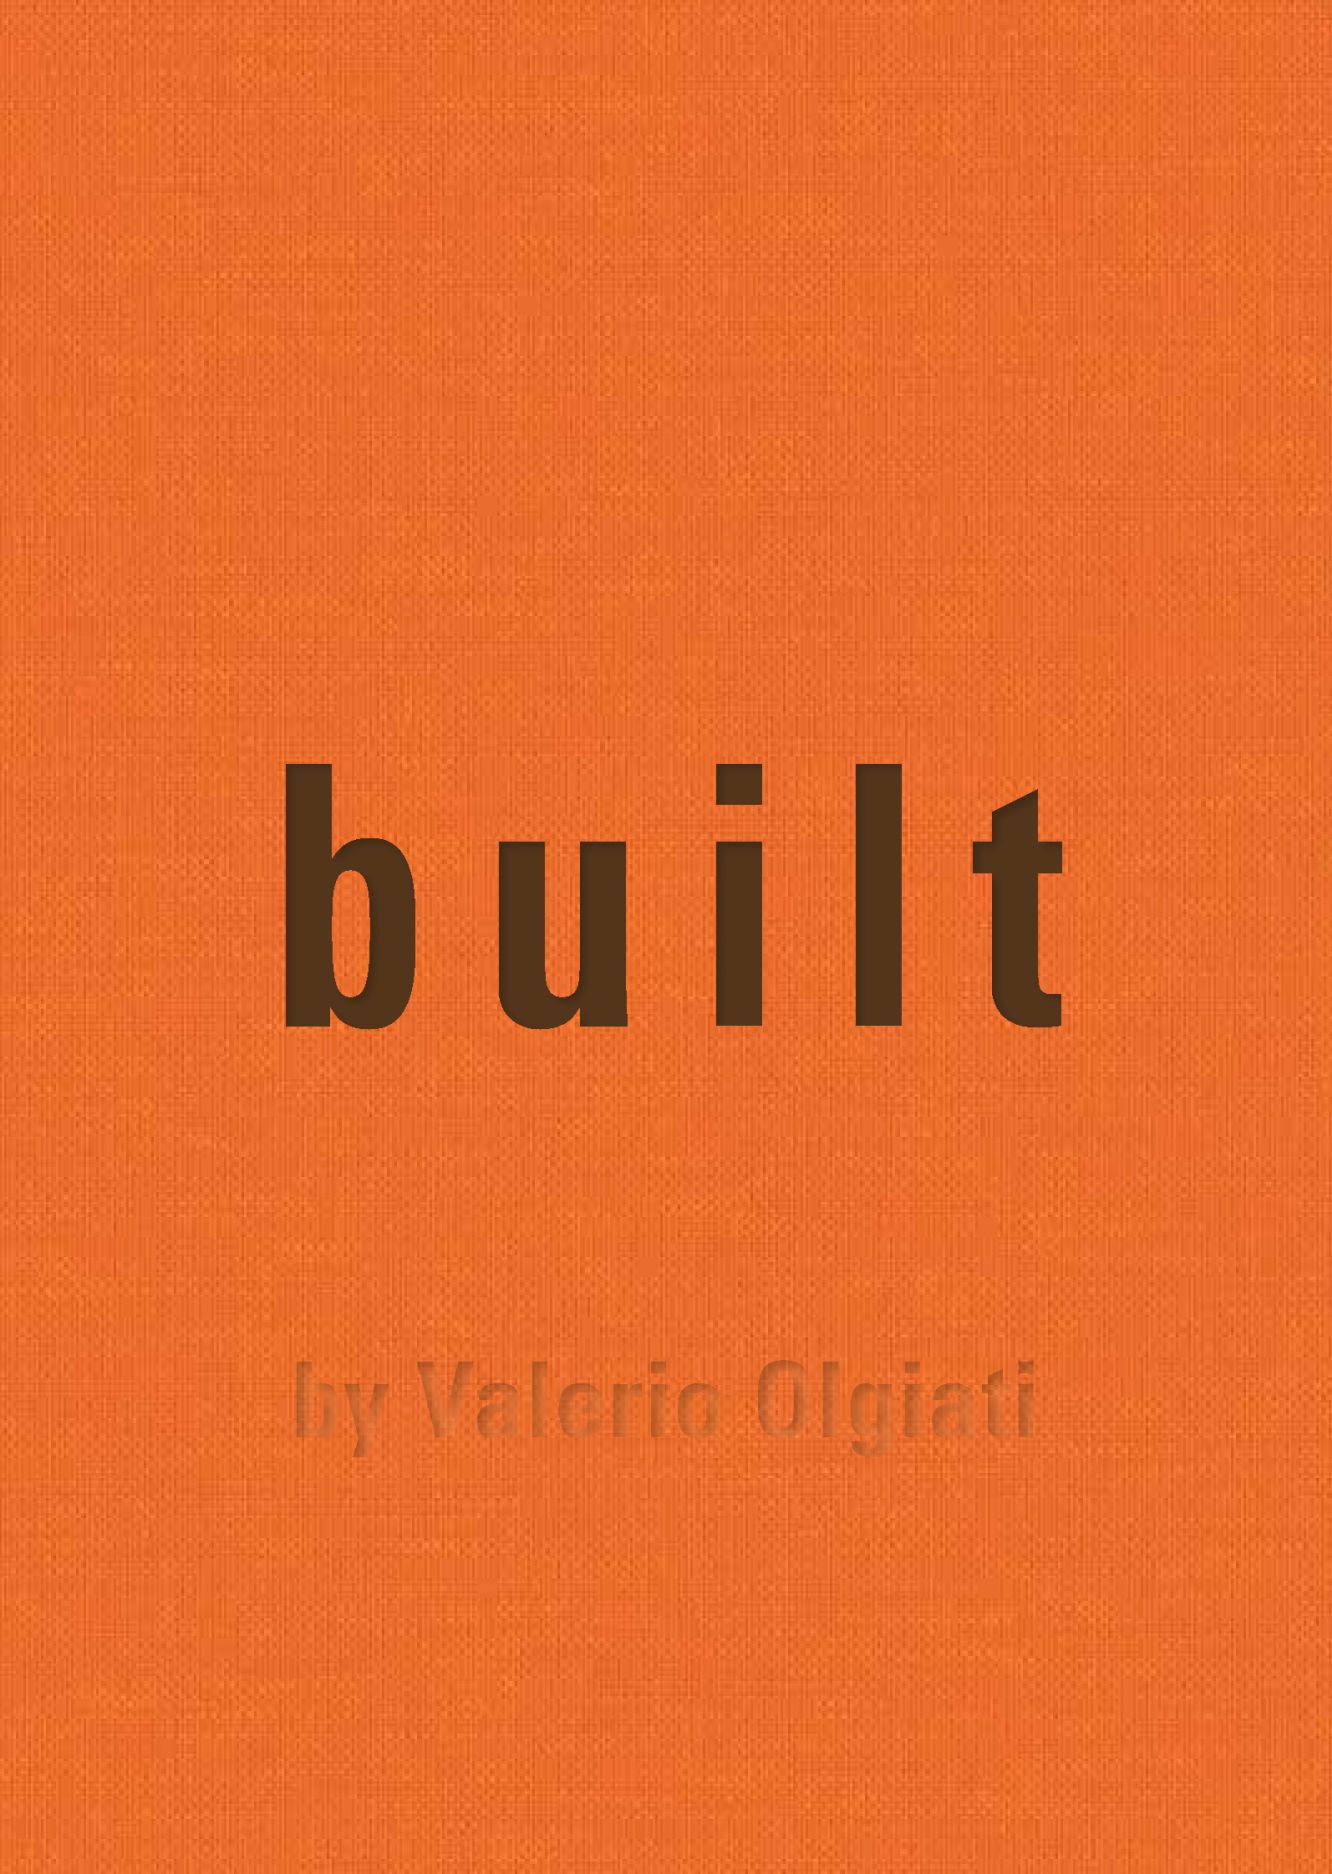 Built: by Valerio Olgiati, Olgiati